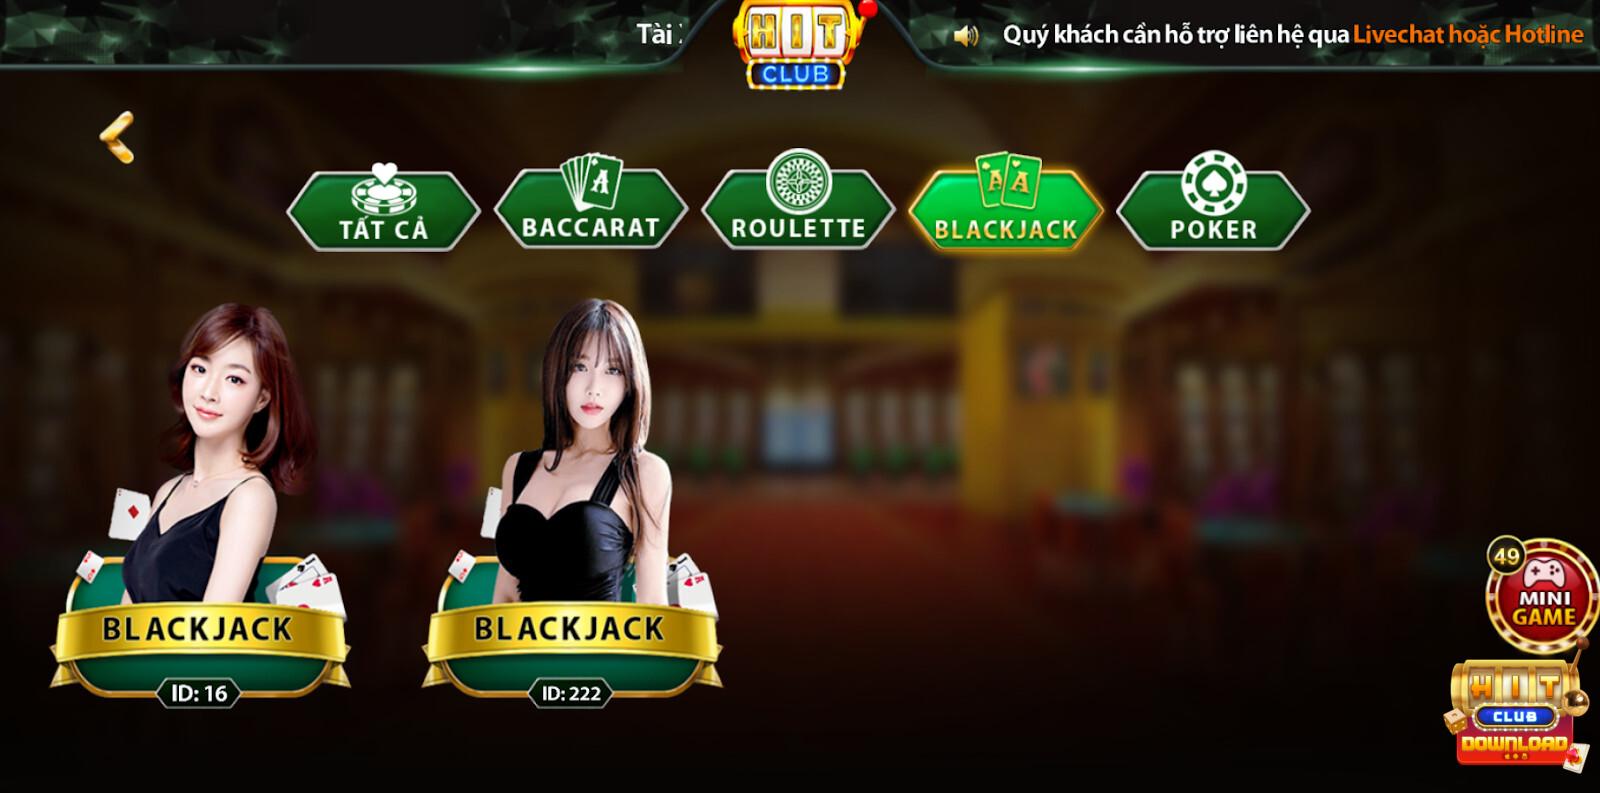 Blackjack Hitclub